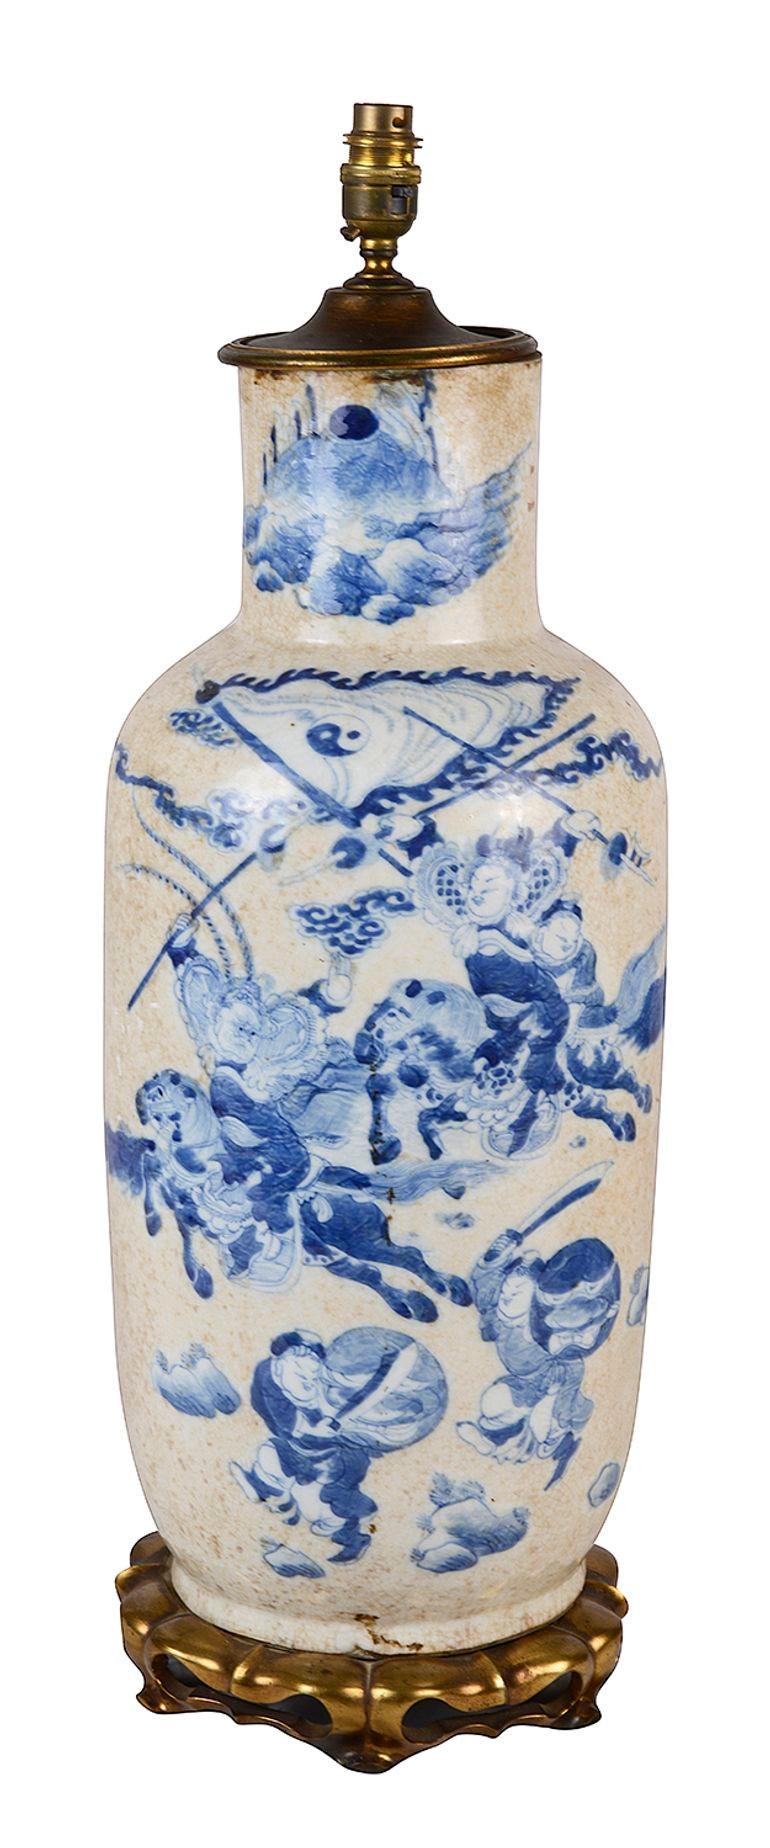 Un impressionnant vase / lampe de bonne qualité de la fin du 19e siècle en porcelaine craquelée bleue et blanche d'exportation chinoise. Il présente de magnifiques scènes peintes à la main représentant des soldats à cheval et courant en tenant des